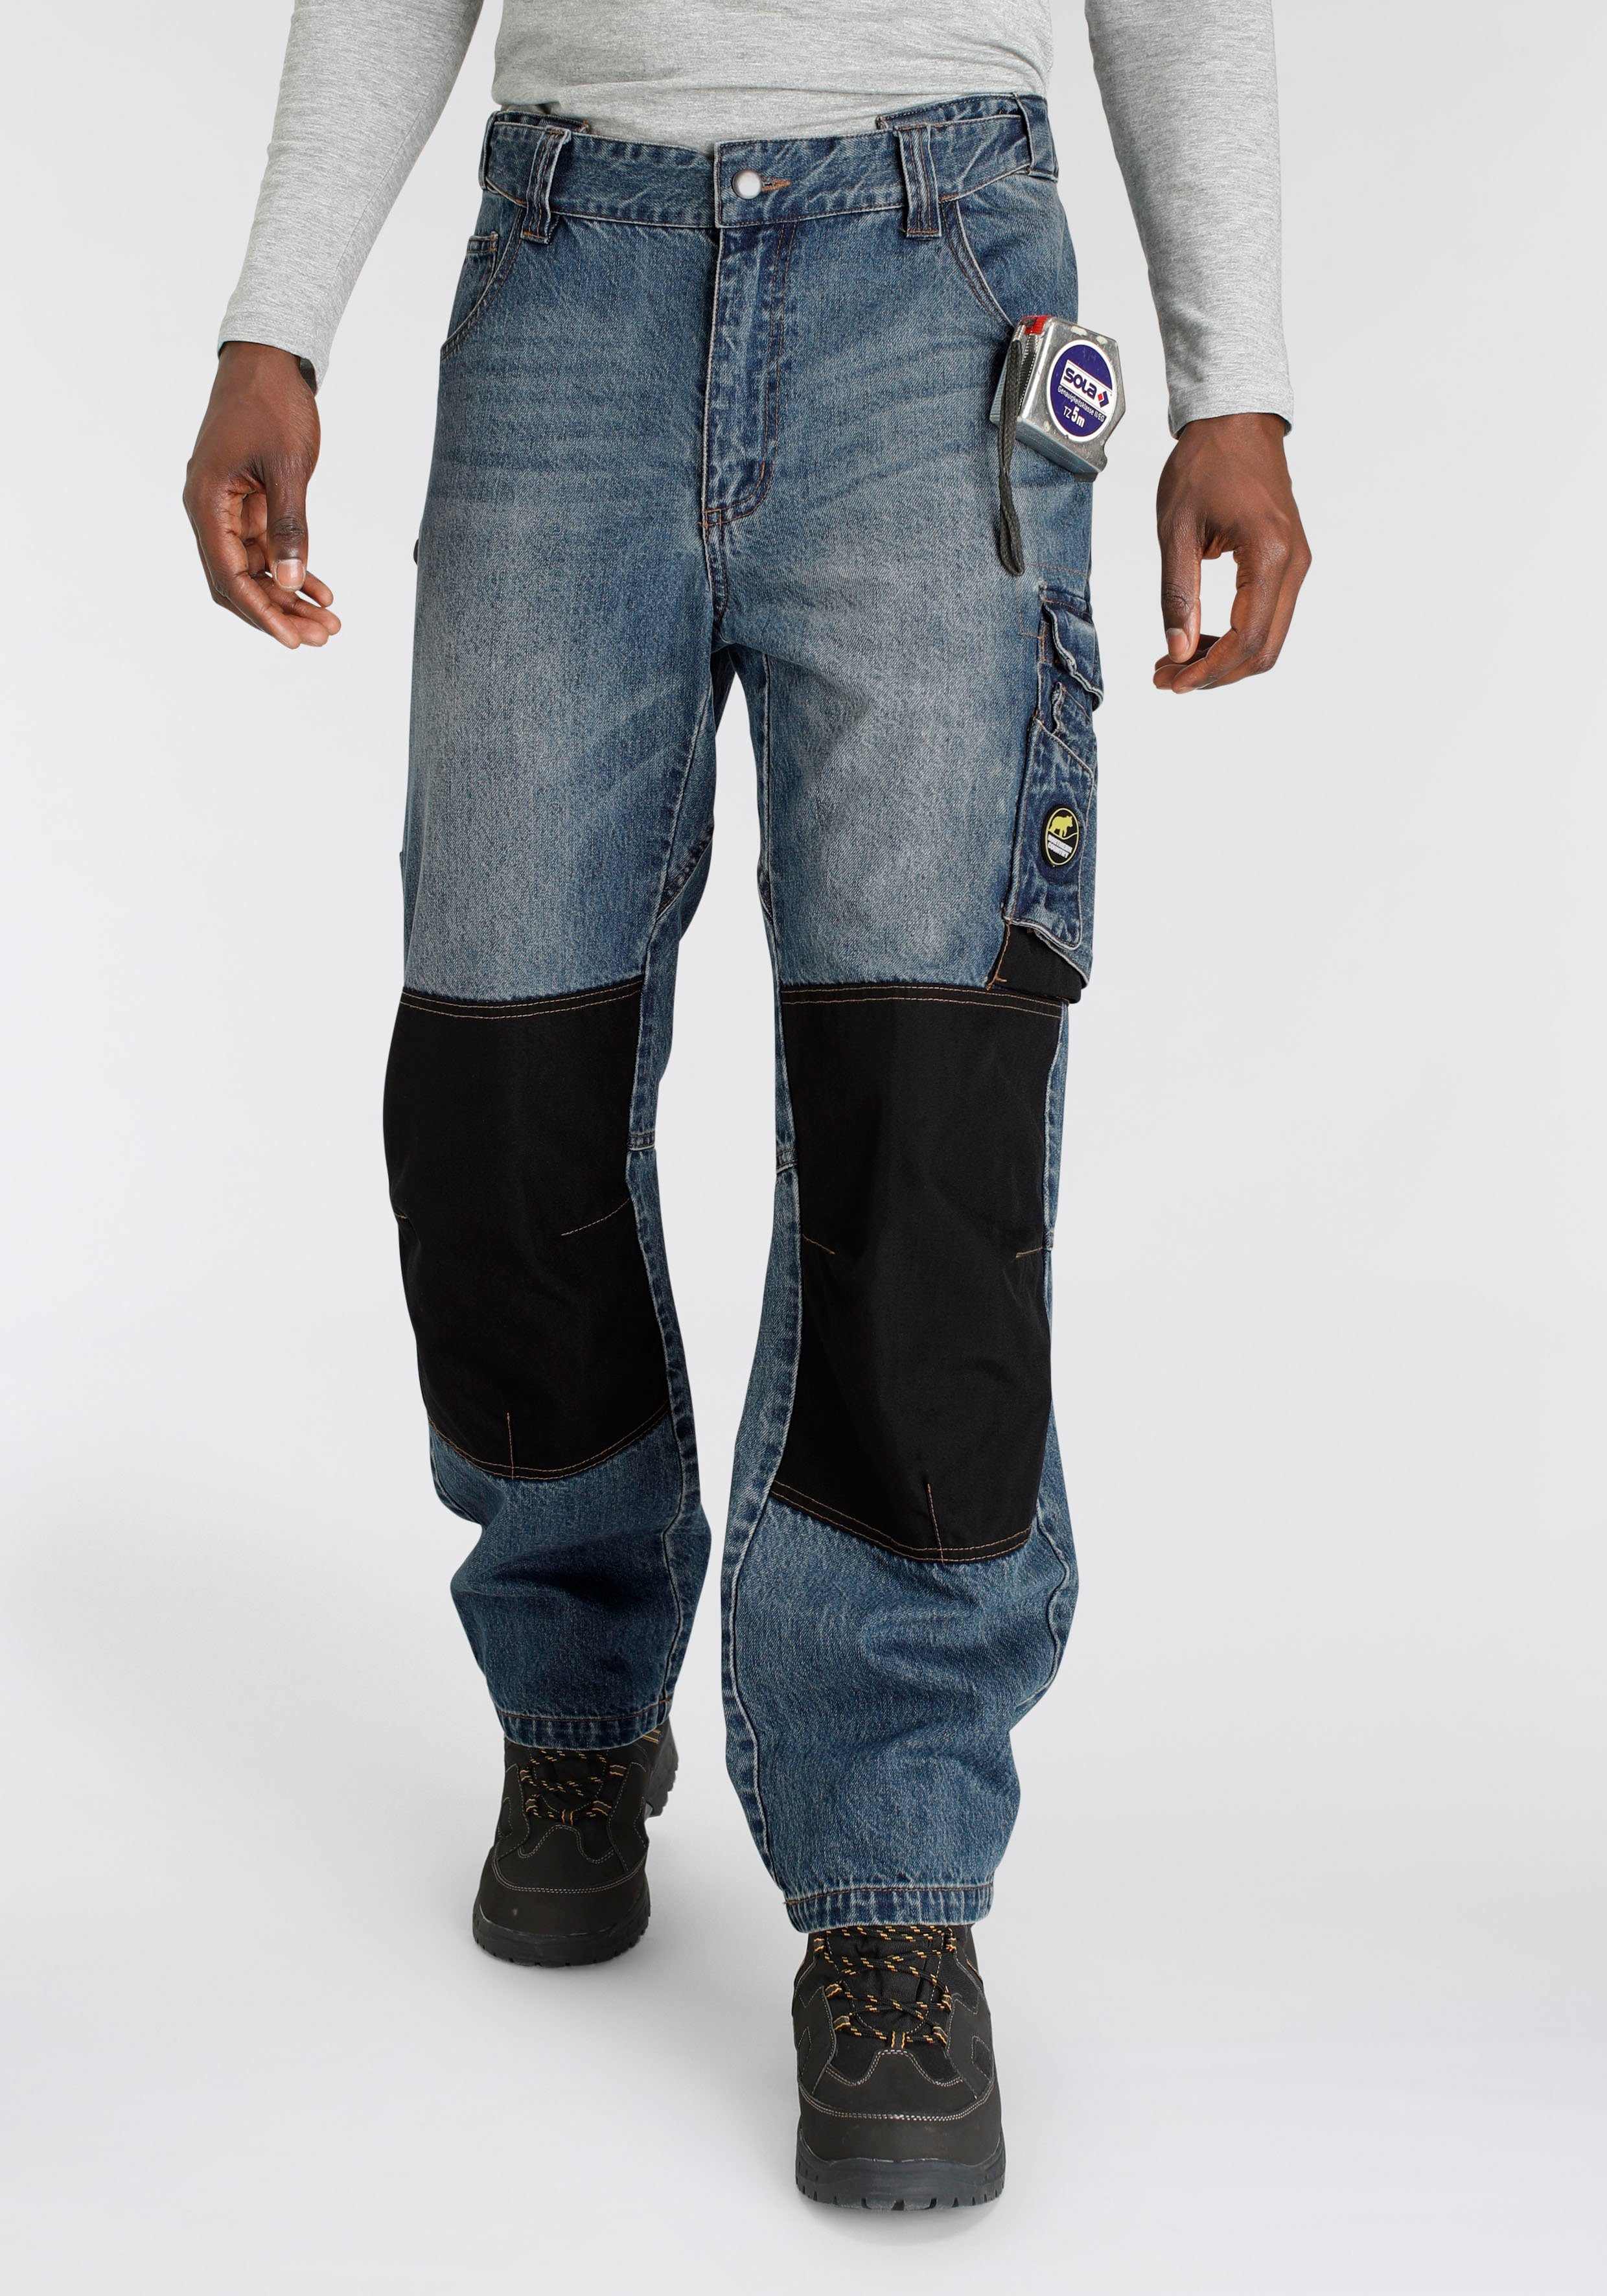 Northern Country Jeansstoff, (aus aus mit fit) Taschen, Cordura Arbeitshose dehnbarem Bund, comfort Jeans 9 Baumwolle, robuster Knieverstärkung praktischen 100% Multipocket